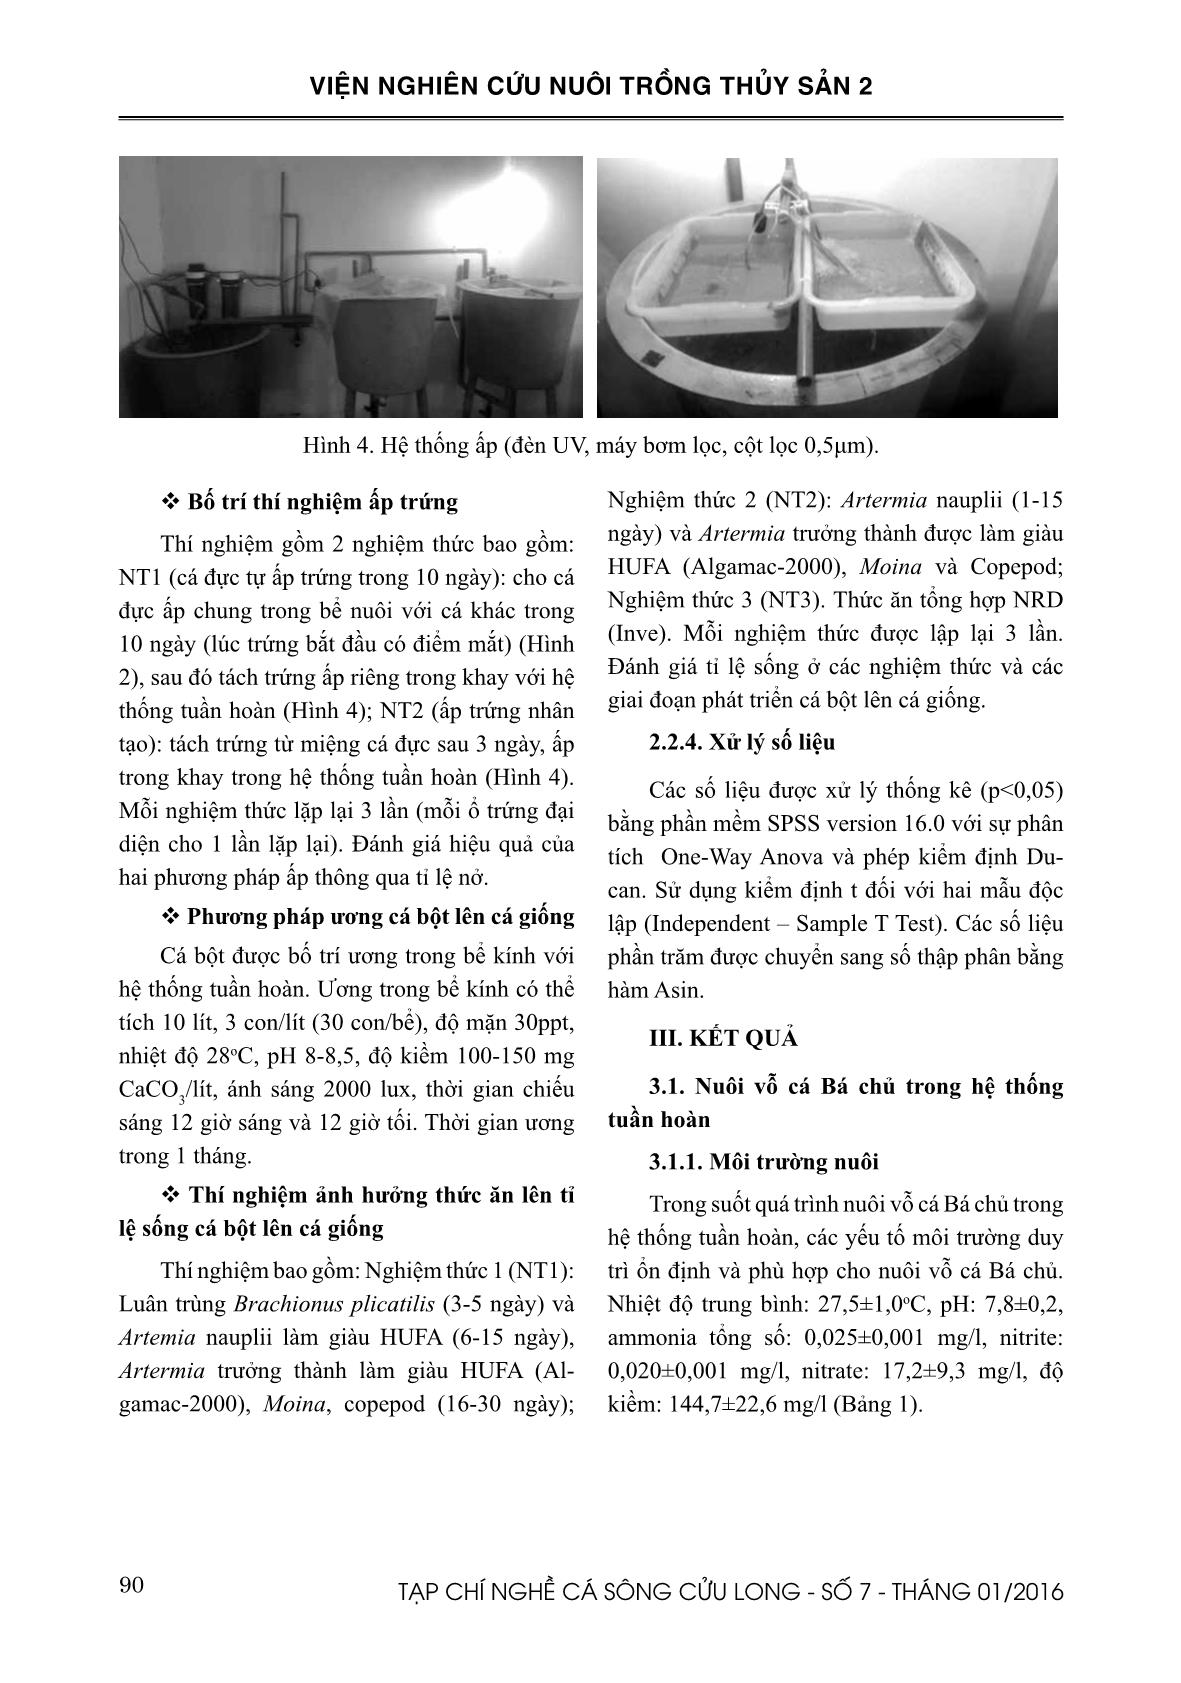 Nghiên cứu sinh sản nhân tạo cá bá chủ (Pterapogon kauderni Kaumans, 1933) tại Việt Nam trang 4